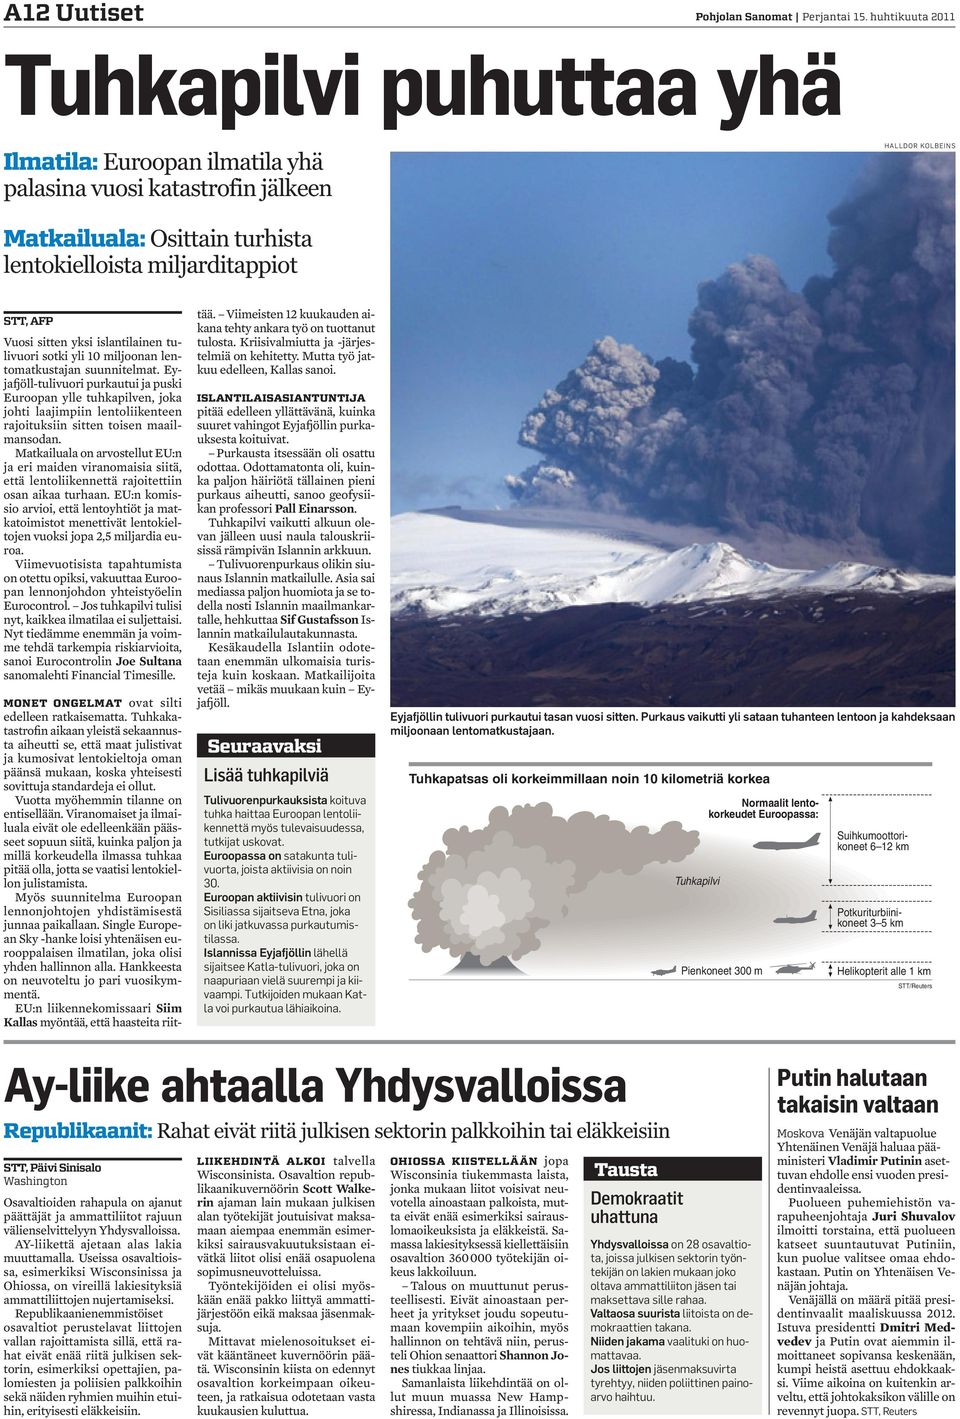 Vuosi sitten yksi islantilainen tulivuori sotki yli 10 miljoonan lentomatkustajan suunnitelmat.